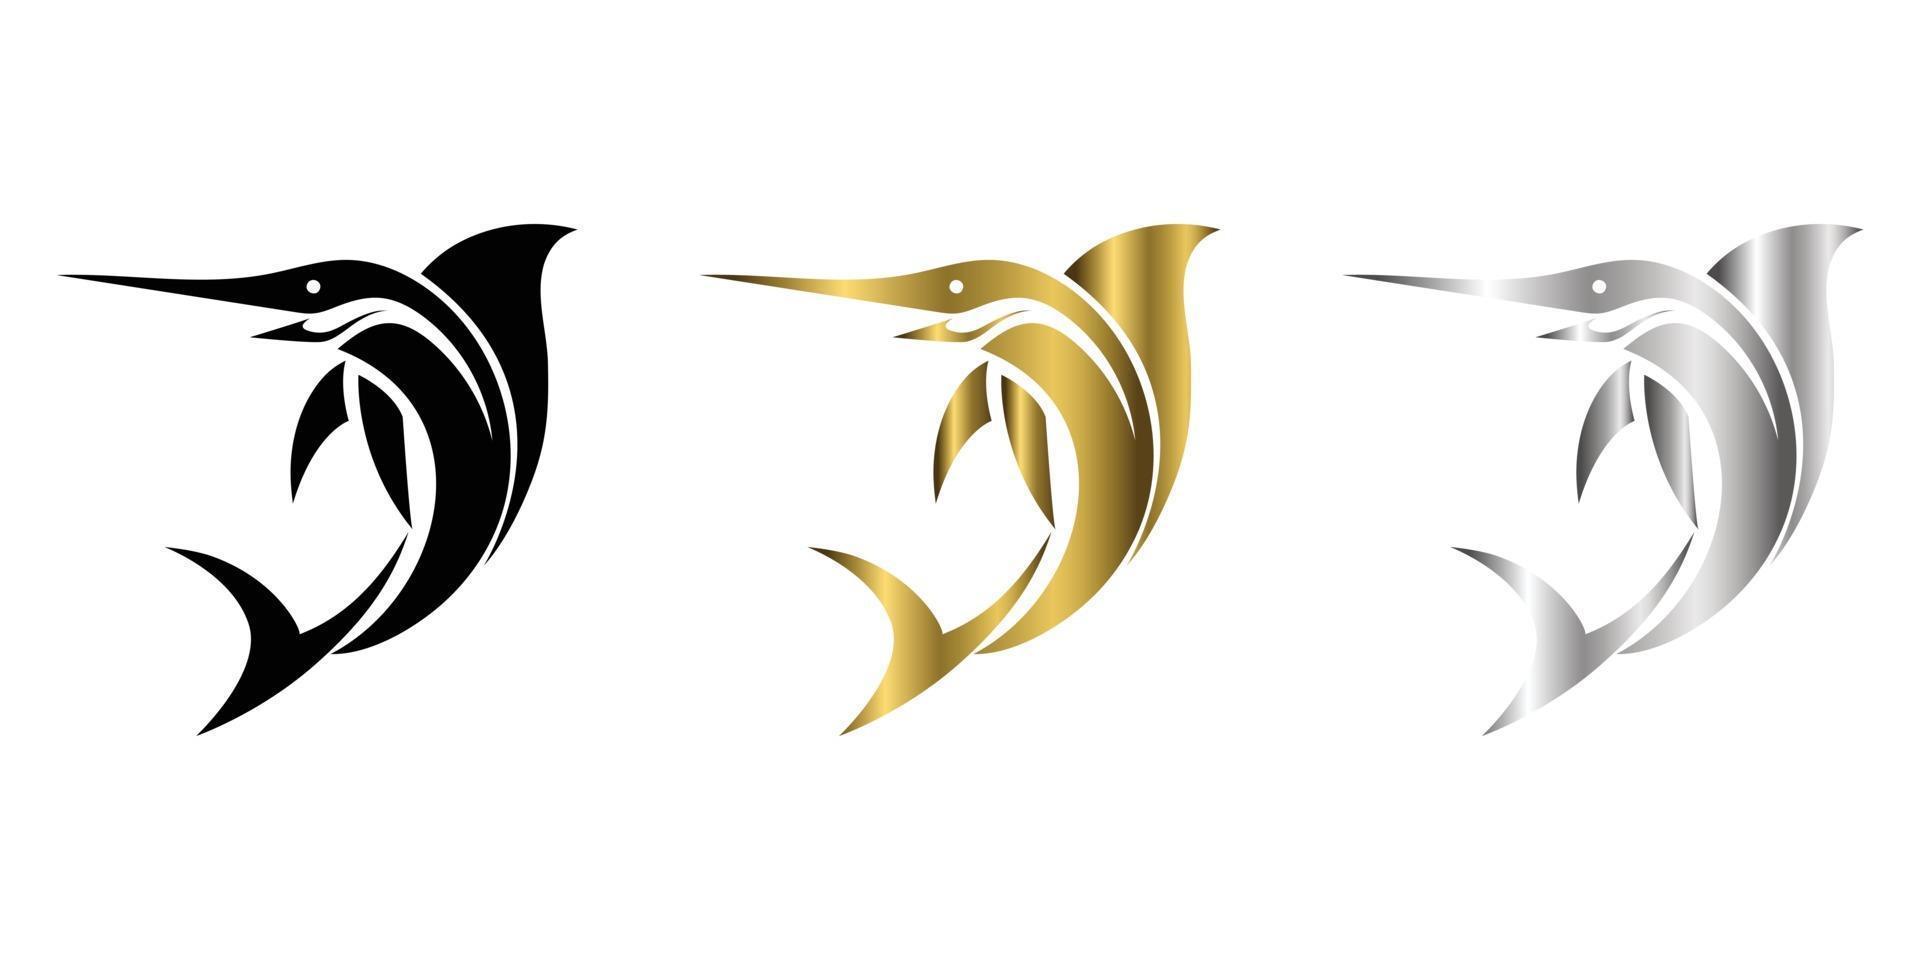 tre colori nero oro argento line art illustrazione vettoriale su sfondo bianco di un sailfish